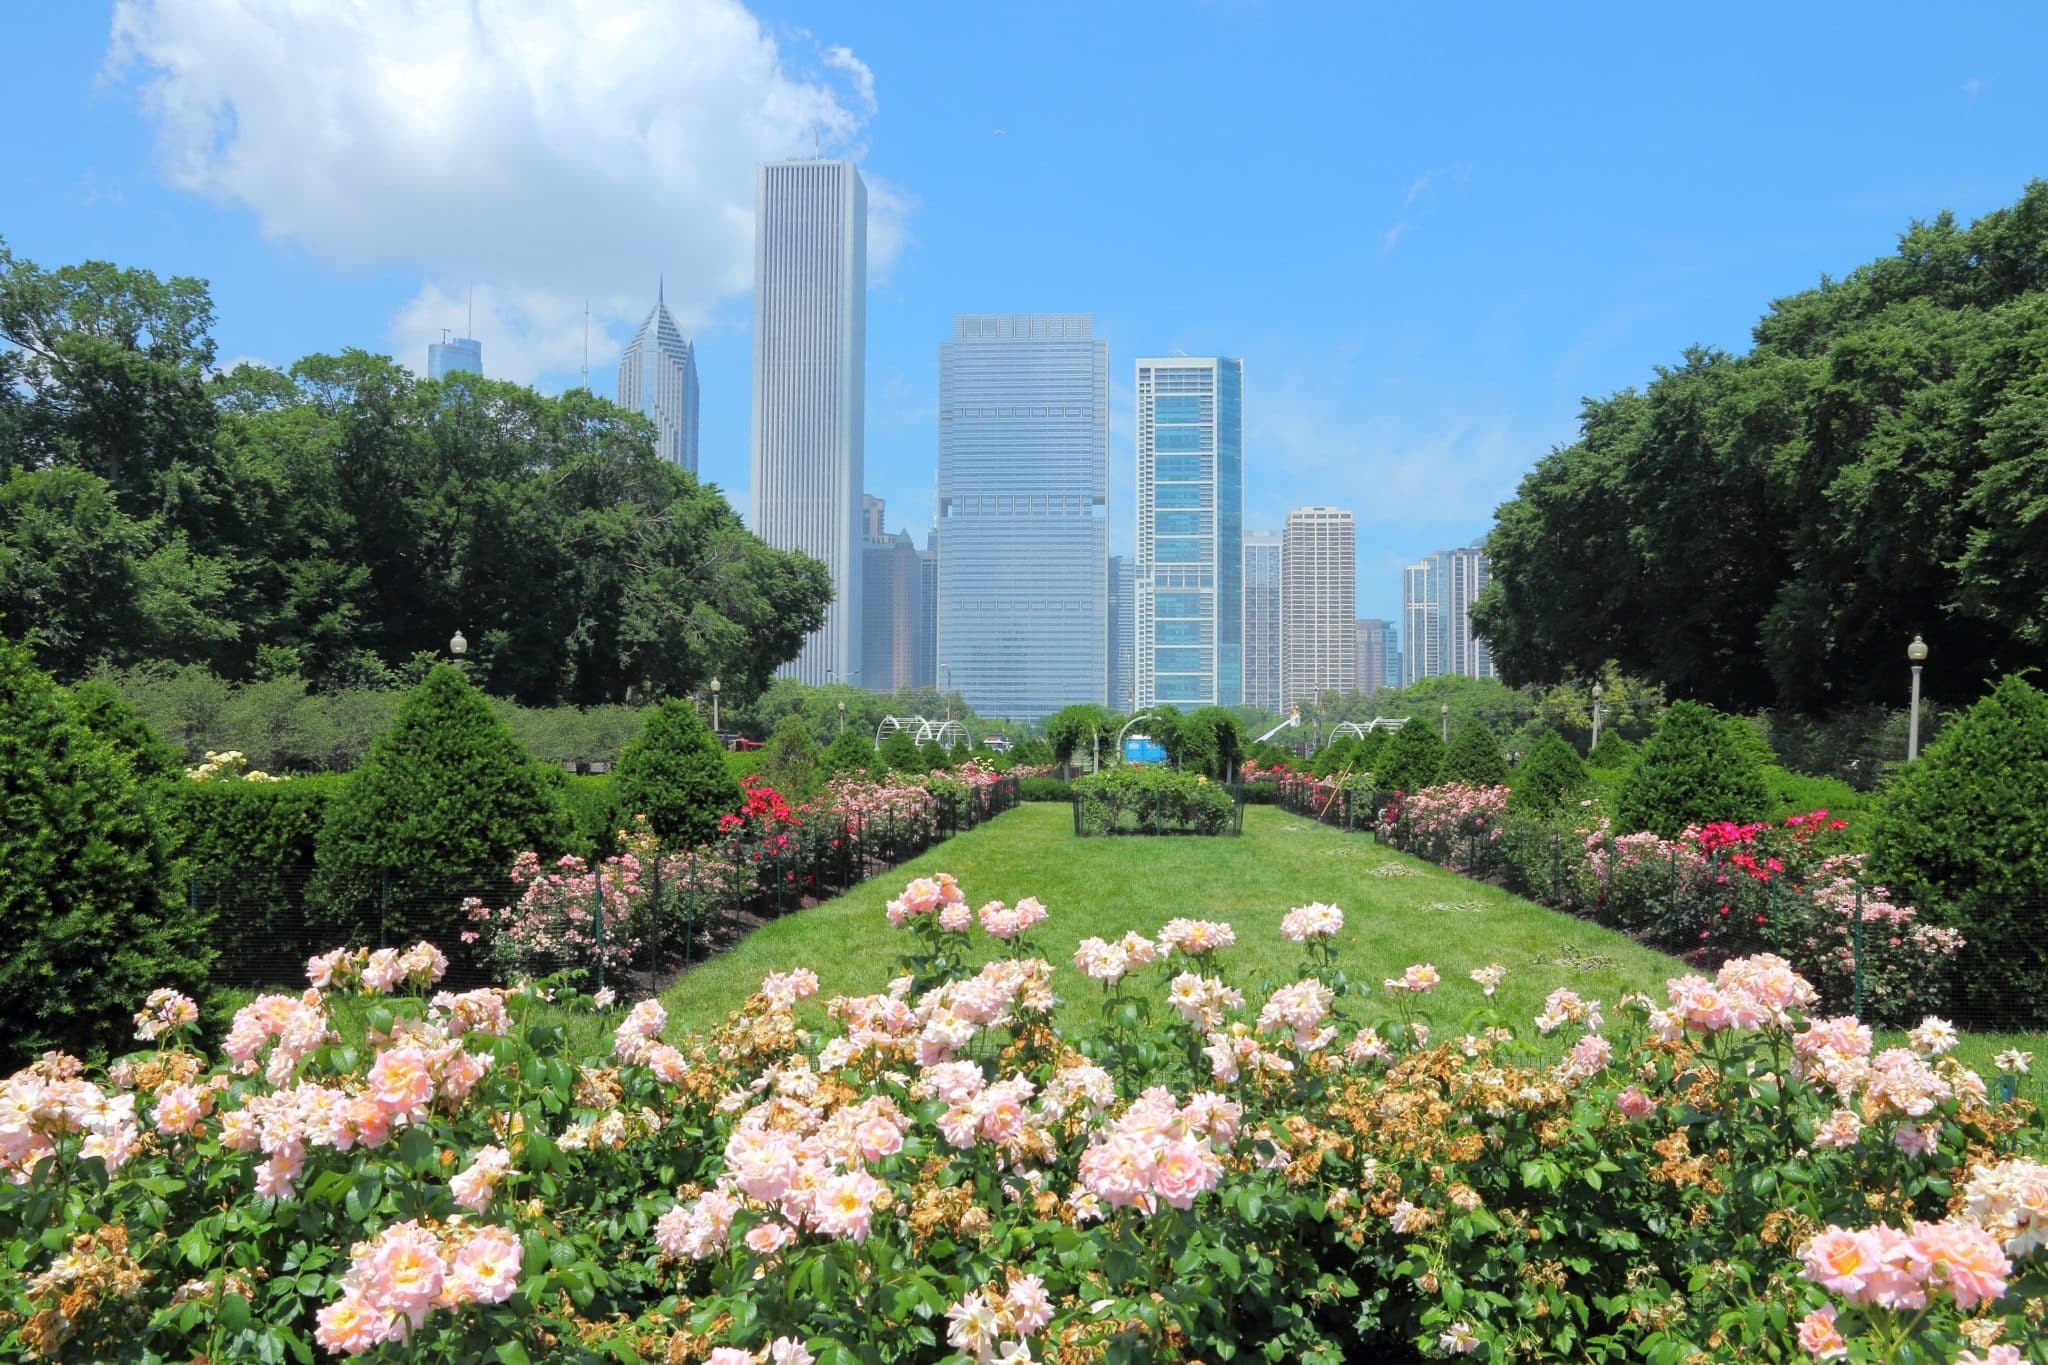 Chicago skyline seen from rose garden in Grant Park.